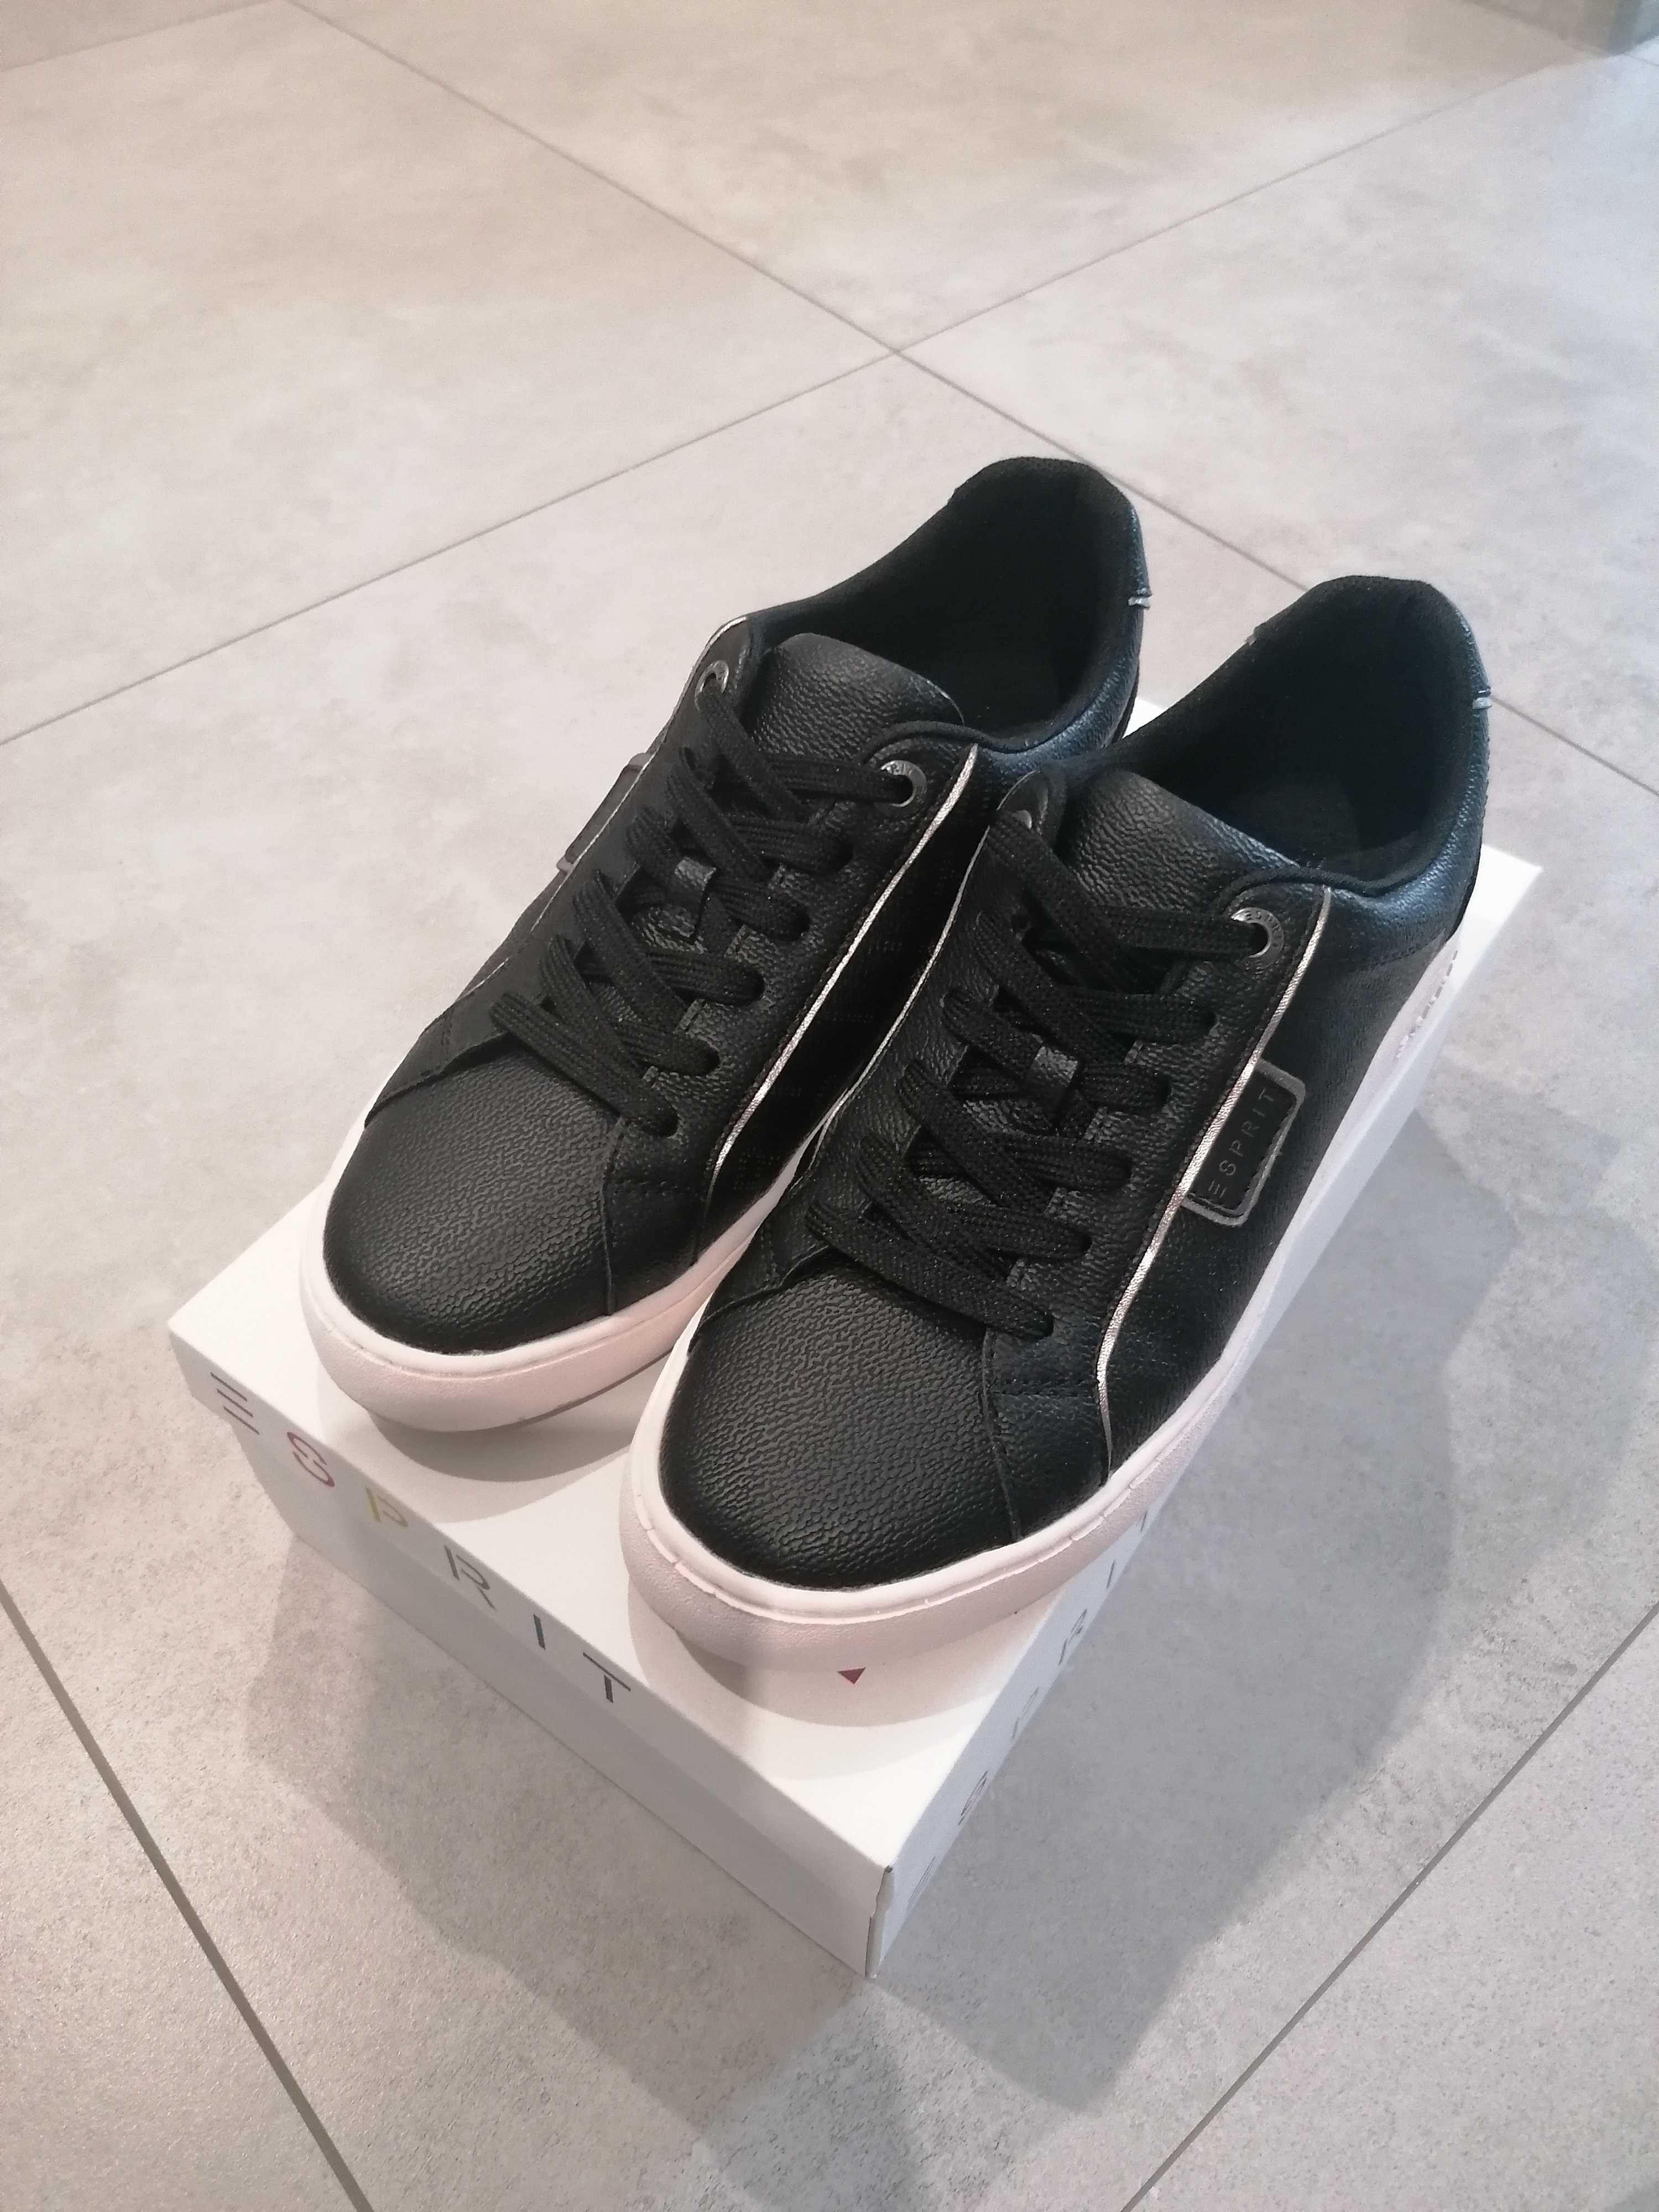 Esprit buty sneakersy czarne r. 39 38 jak nowe.